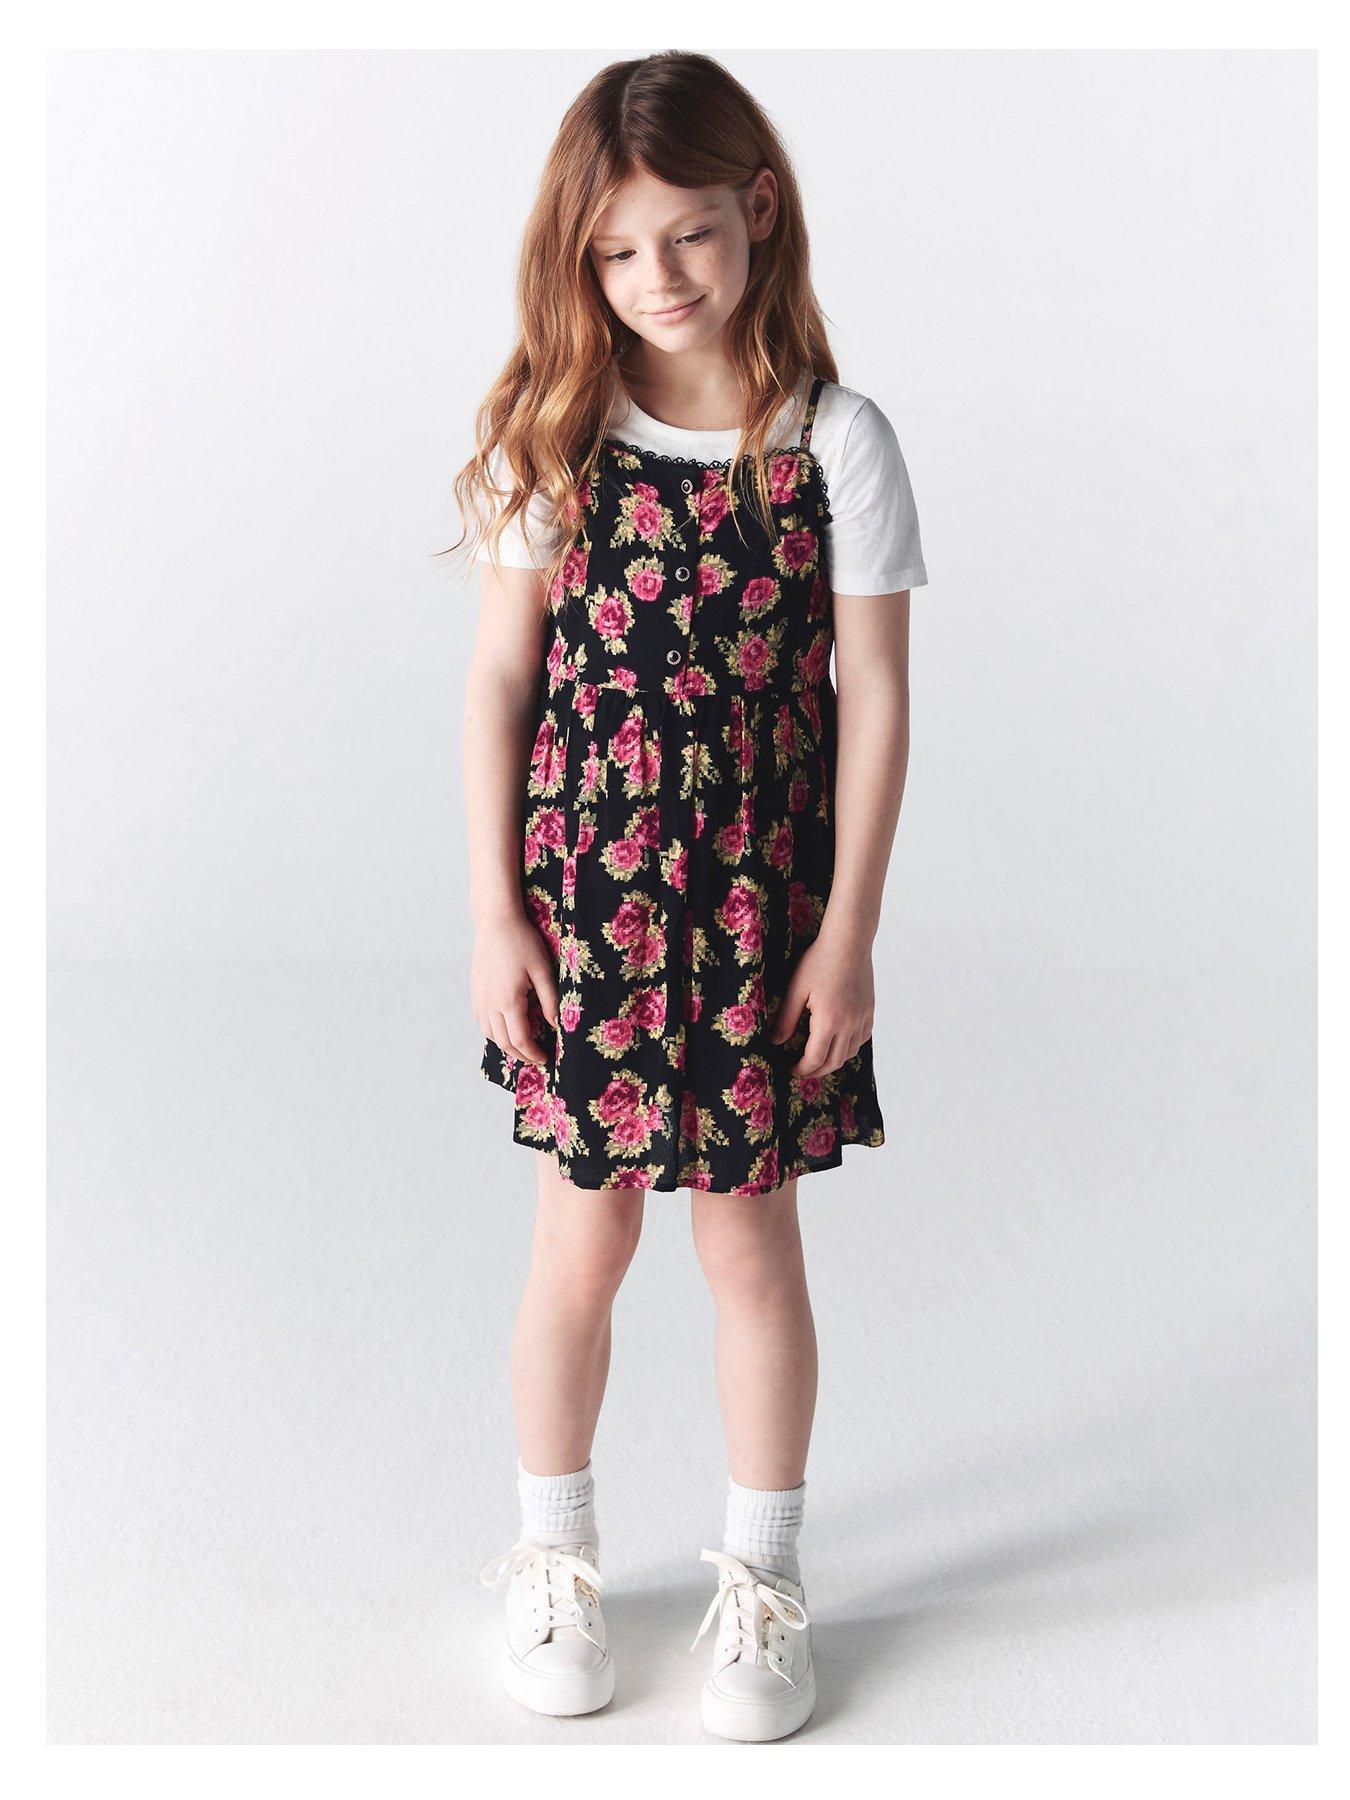 Disney Stitch Ruffle Sleeve Tulle Dress-Girls Sizes 4-16